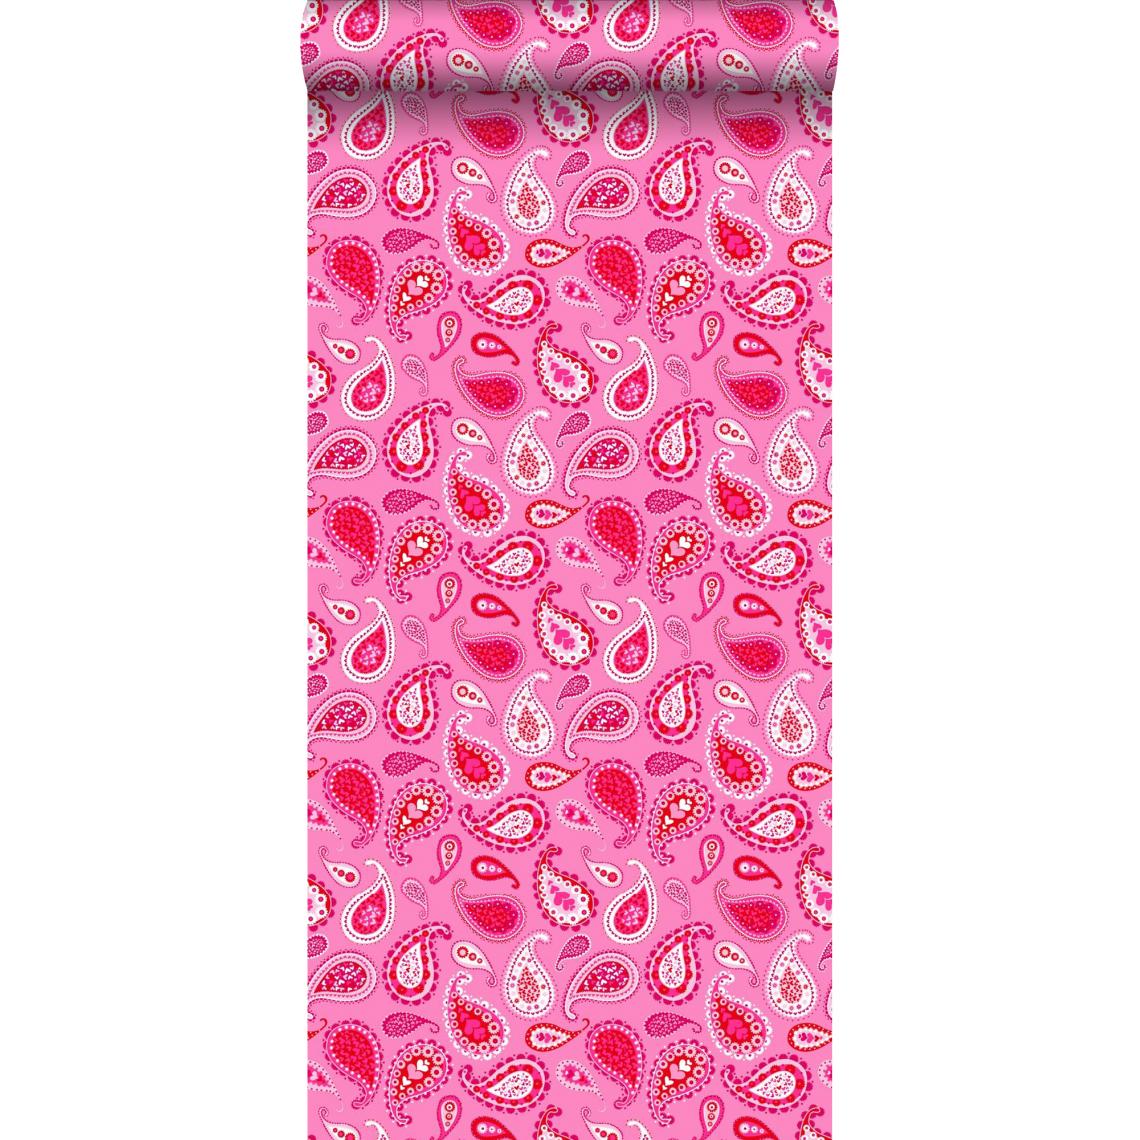 ESTAhome - ESTAhome papier peint paisleys rose bonbon - 115737 - 53 cm x 10,05 m - Papier peint